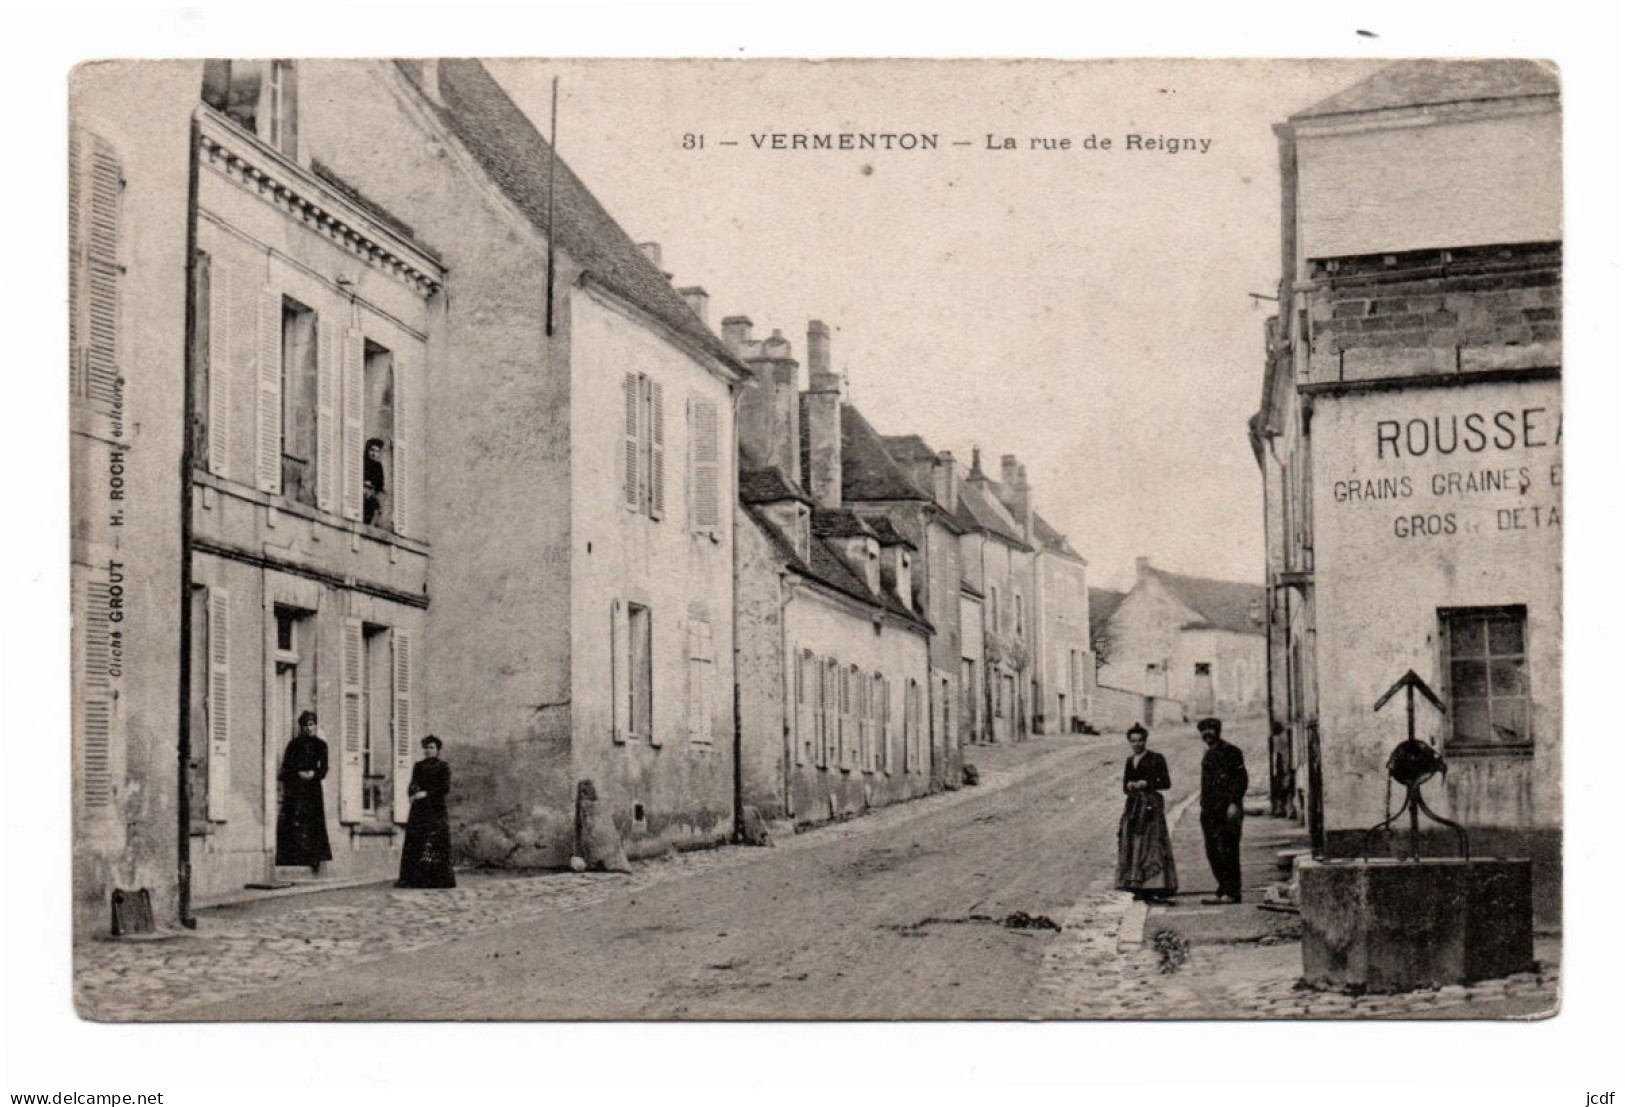 89 VERMENTON La Rue De Reigny N° 31 - Edit Roch 1915 - Puits - Rousseau Marchand D'engrais Et Grains - Animée - Vermenton